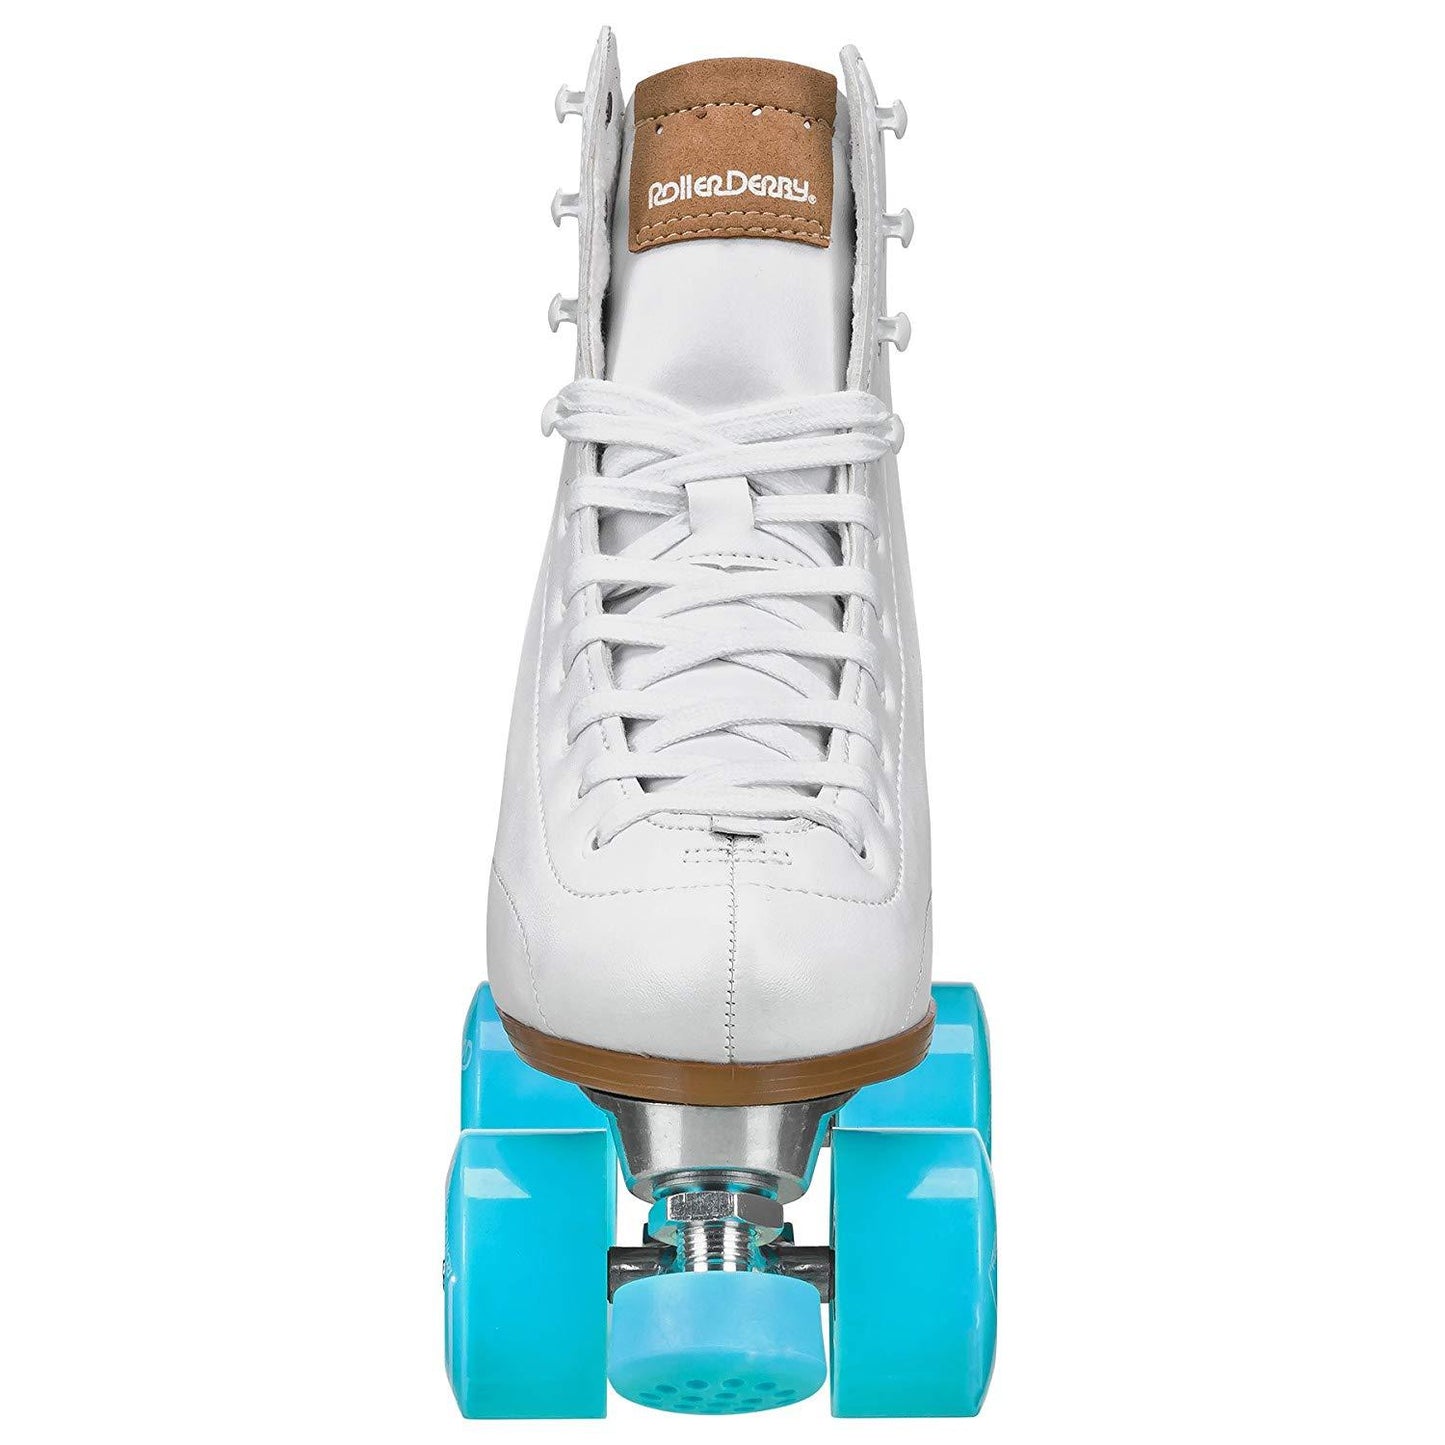 RDS Cruze XR9 White Roller Skates - US10